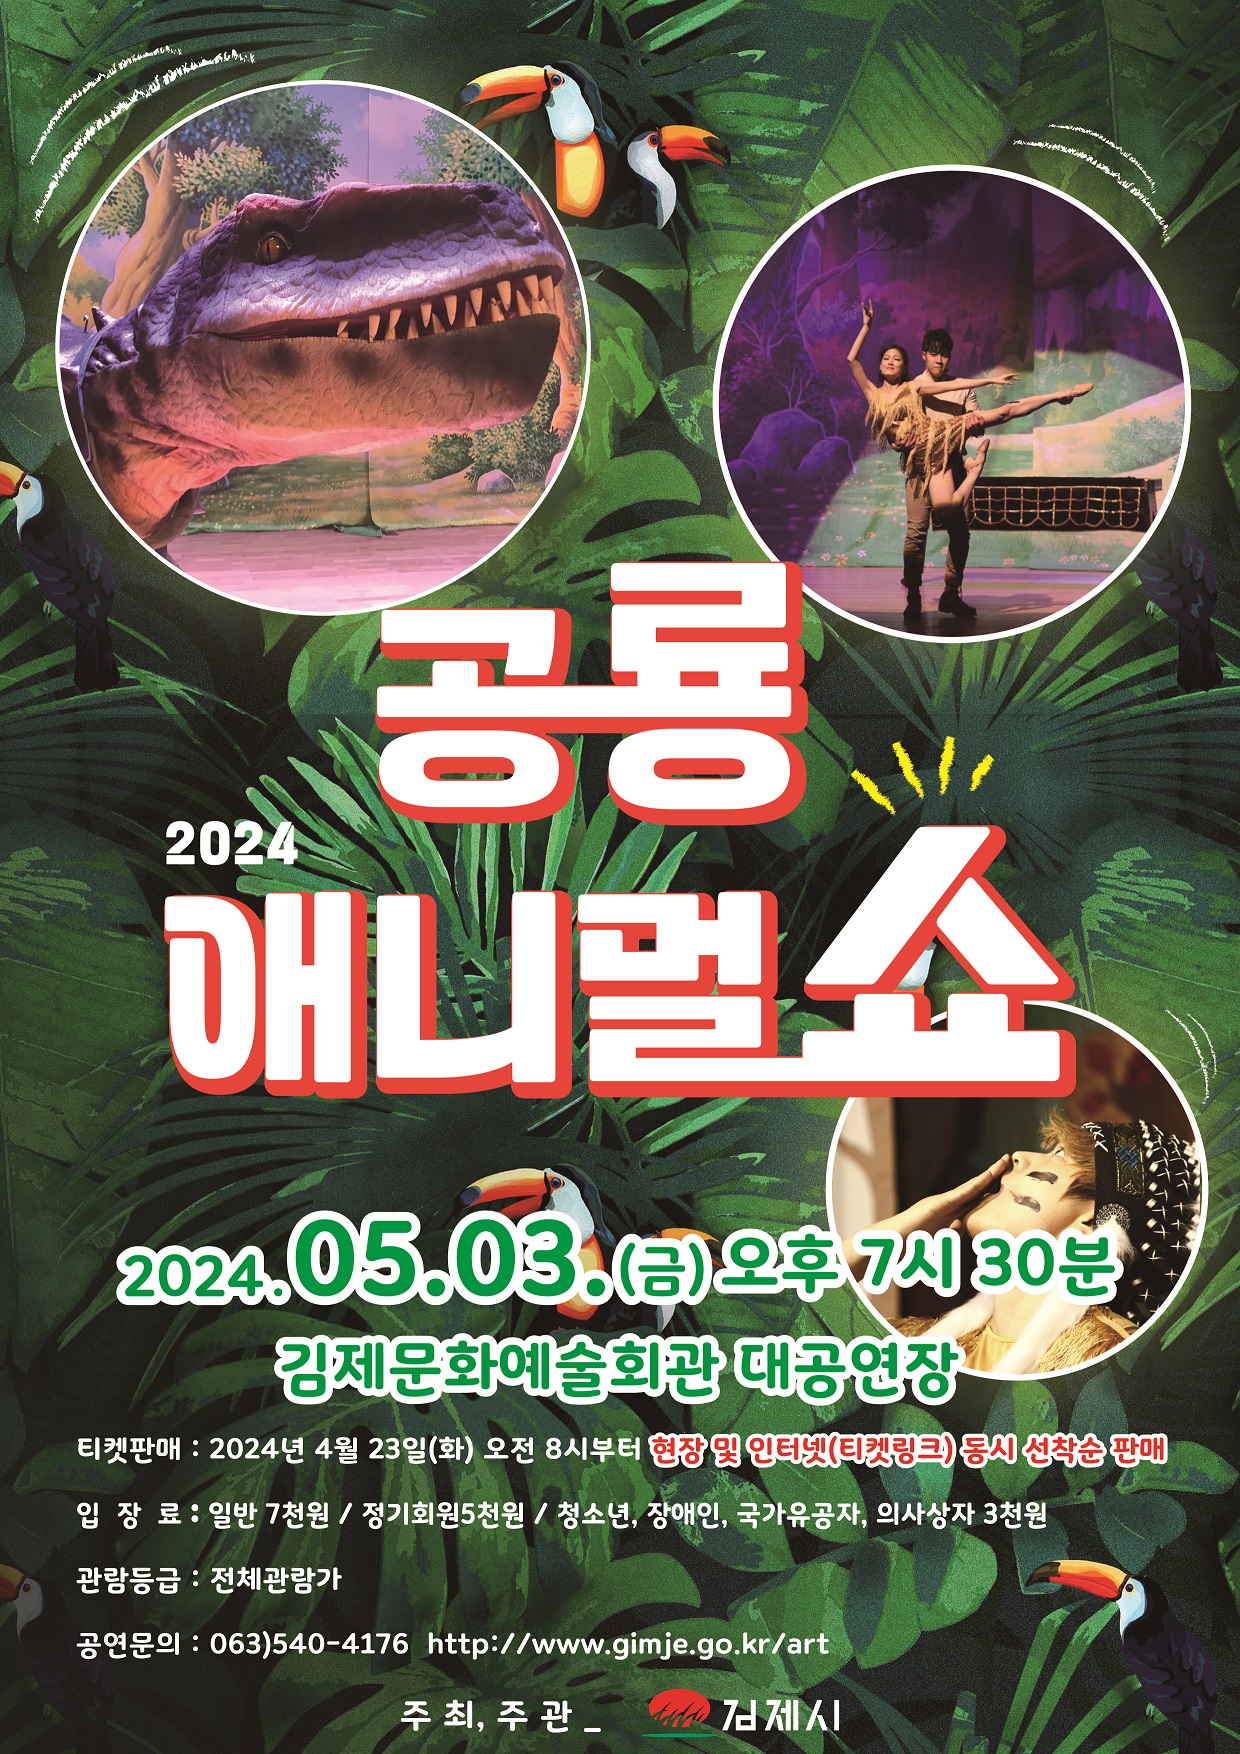 [부용초등학교-2589 (첨부) 김제시장 교육문화과] 공룡 애니멀 쇼 공연 전단지 앞면 1부